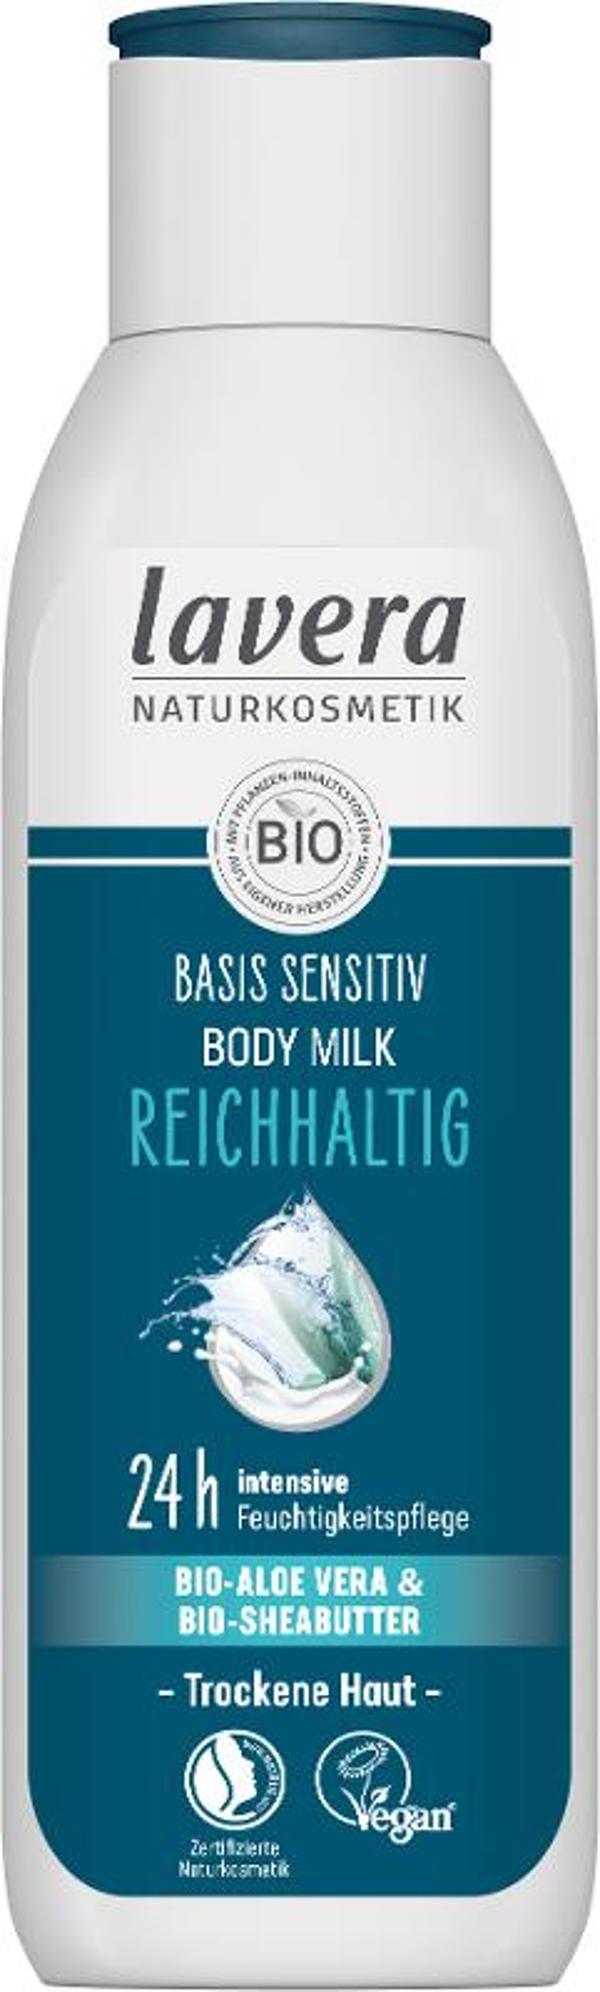 Produktfoto zu Basis Sensitiv Bodylotion - Reichhaltig, 250 ml